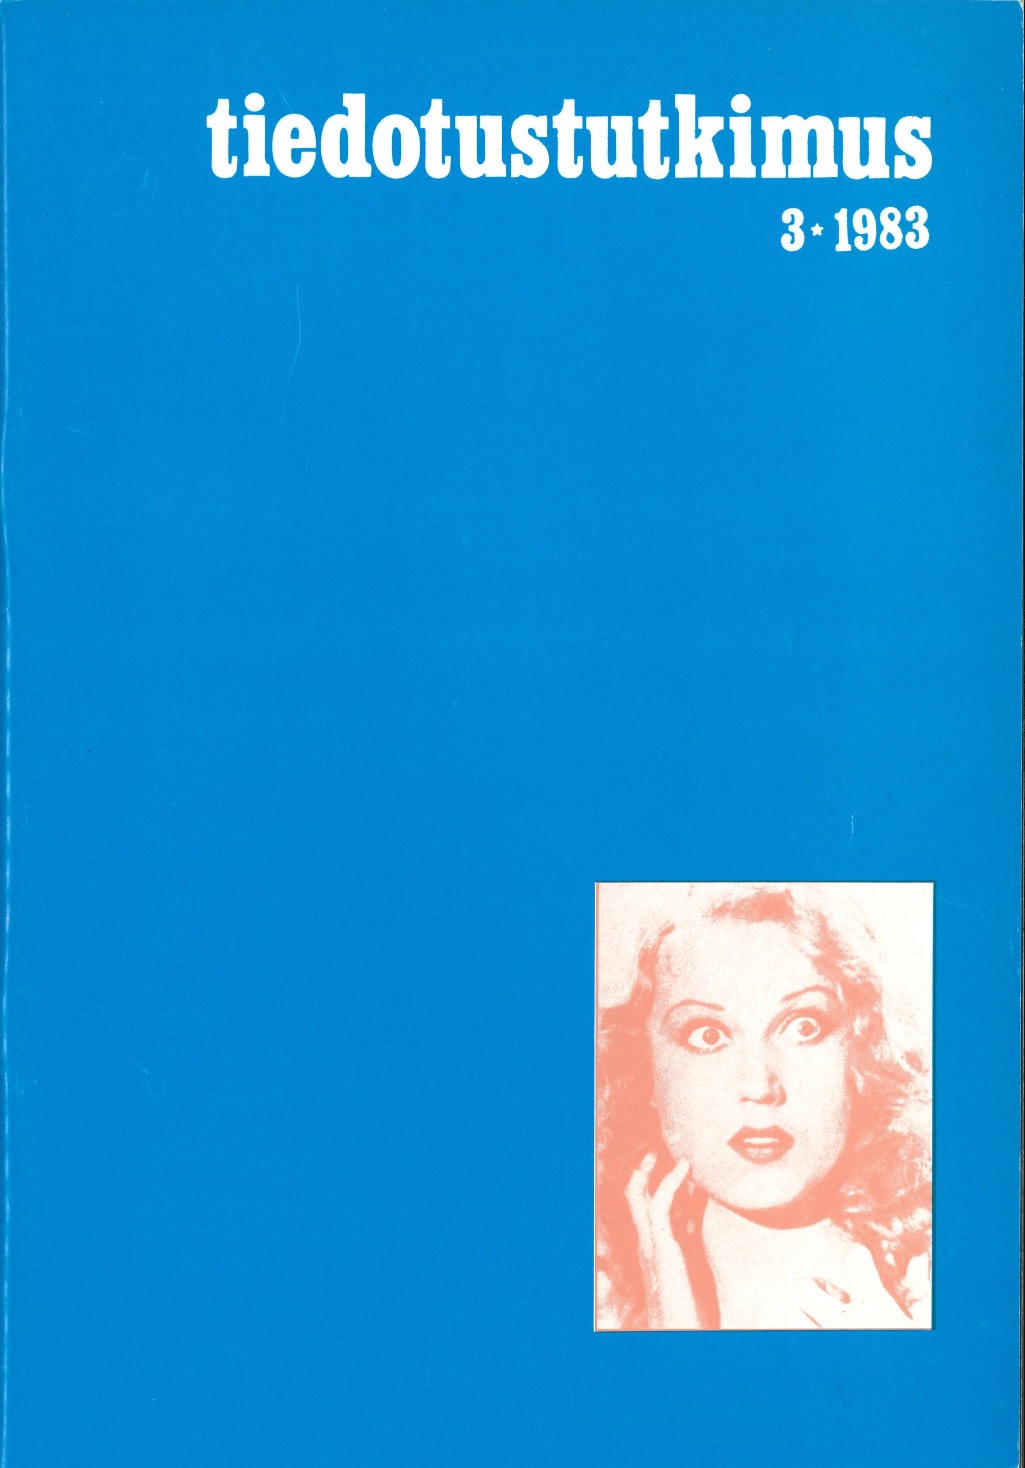 					Näytä Vol 6 Nro 3 (1983)
				